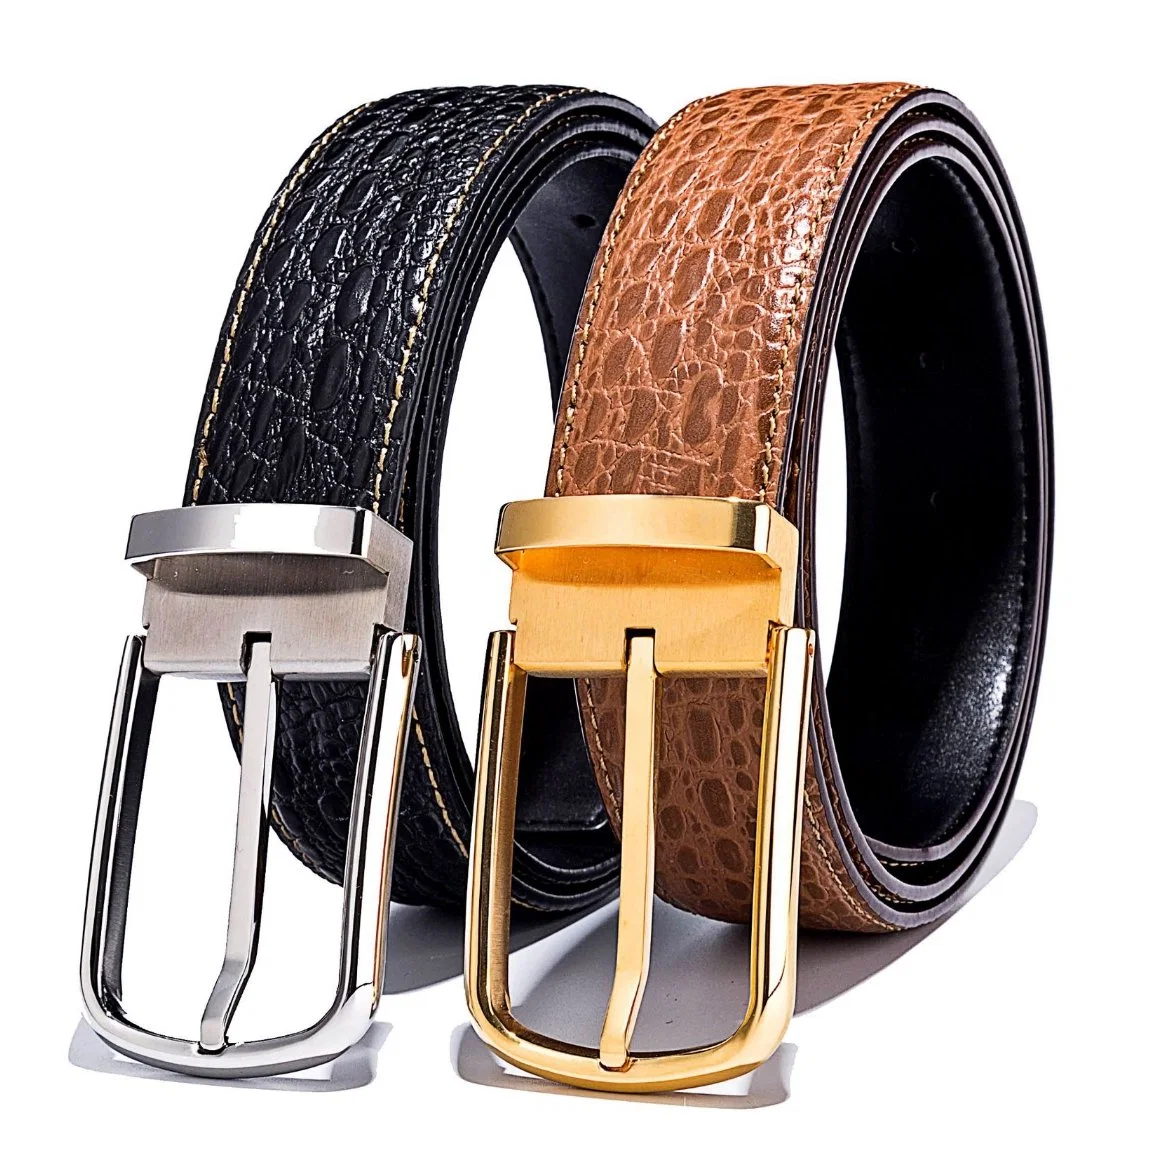 Chinese Men's Fashion Black Cowhide Genuine Leather Belt Men Genuine Pin Buckle Leather Belts